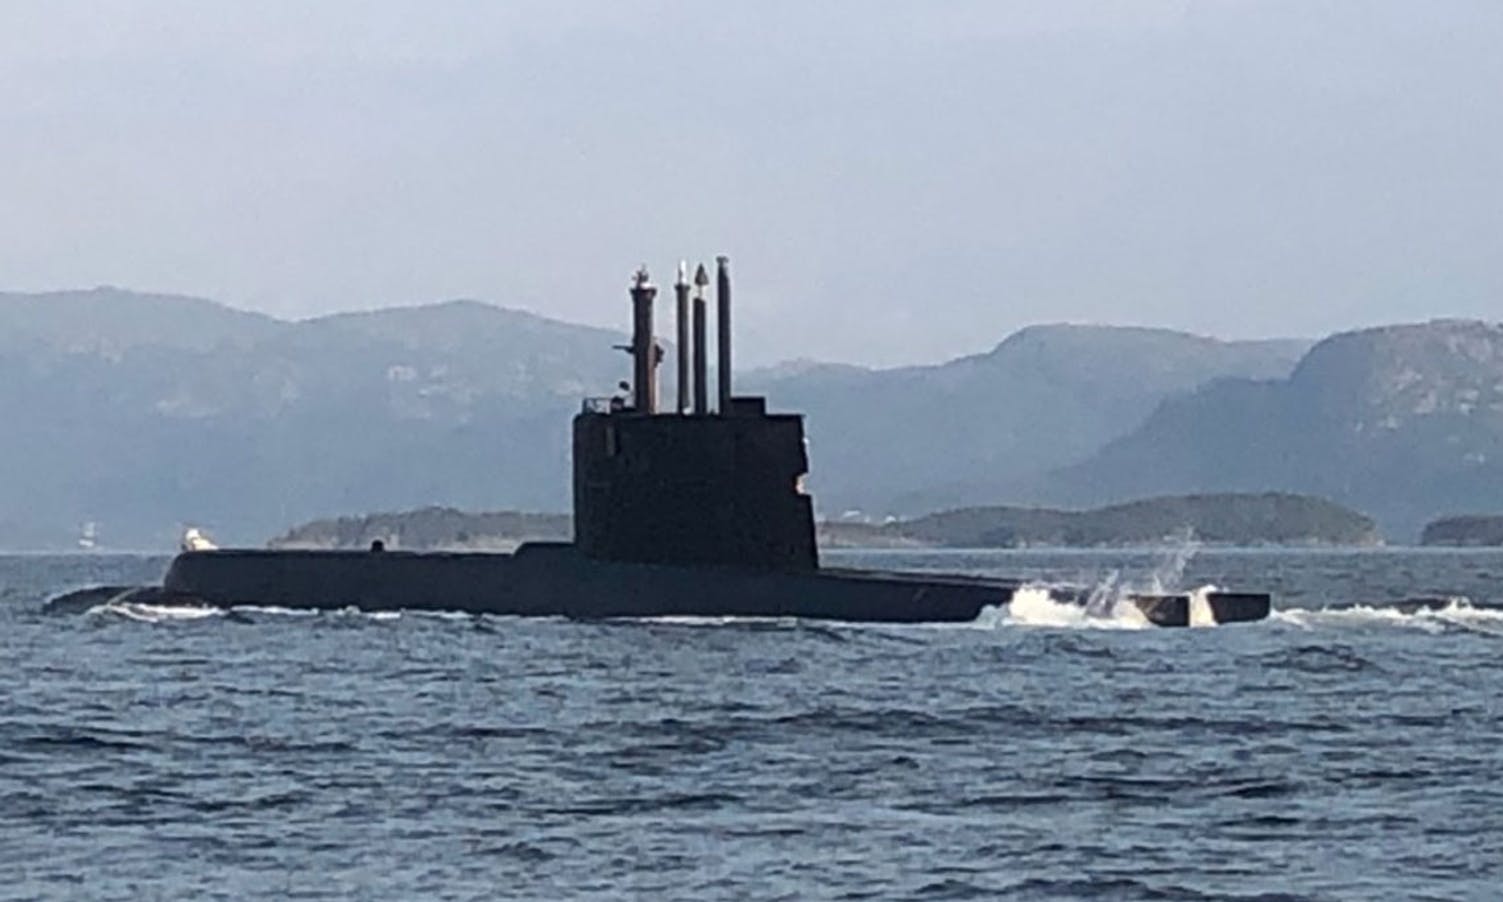 KNM Utsira er navnet på denne ubåten. (Foto: Bjørn Ingvar Fosen)